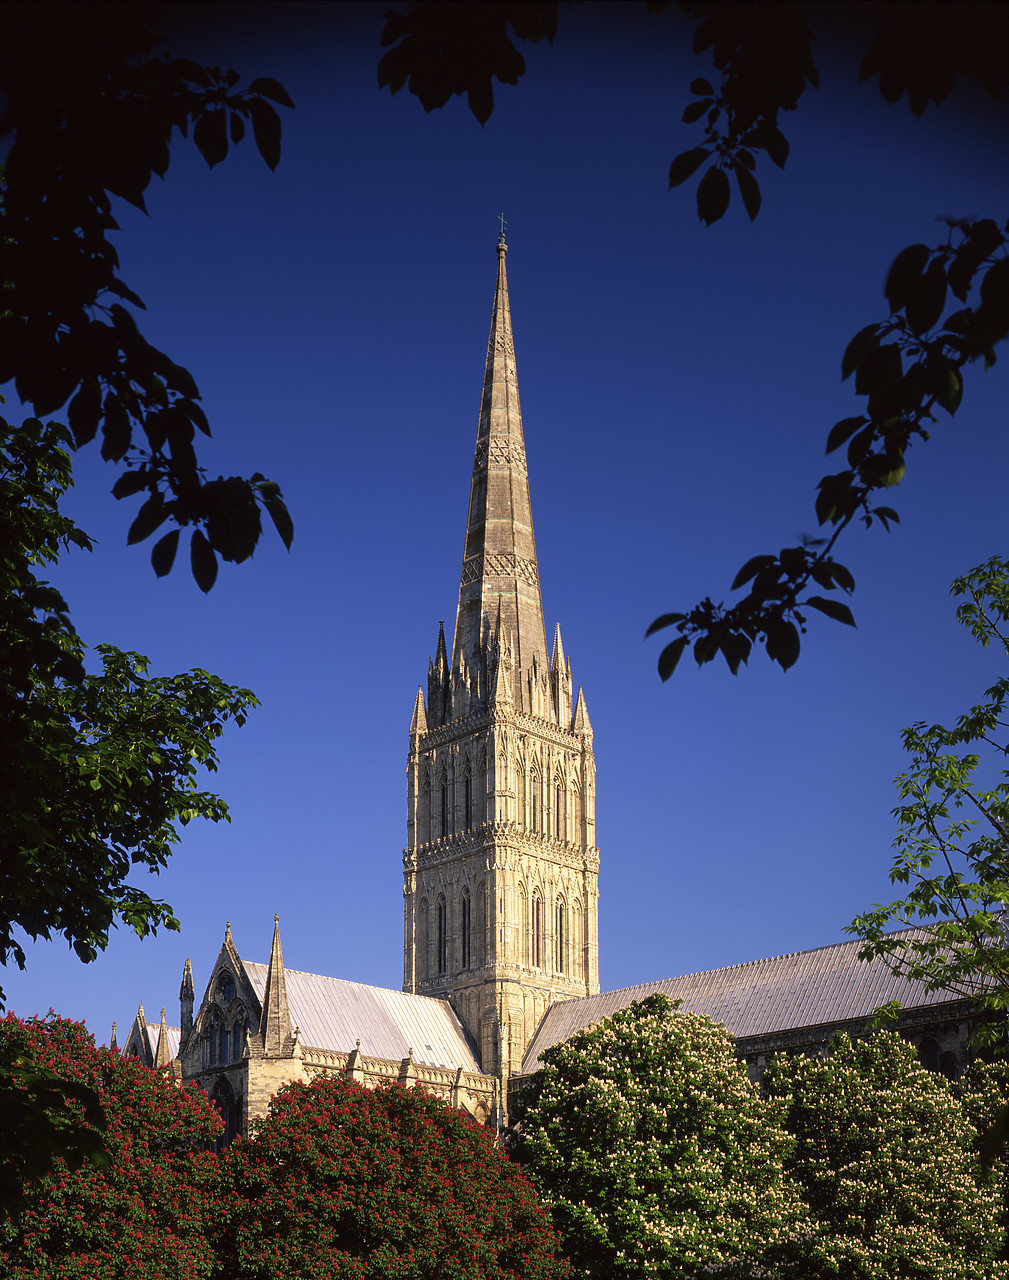 #980707-6 - Salisbury Cathedral, Wiltshire, England